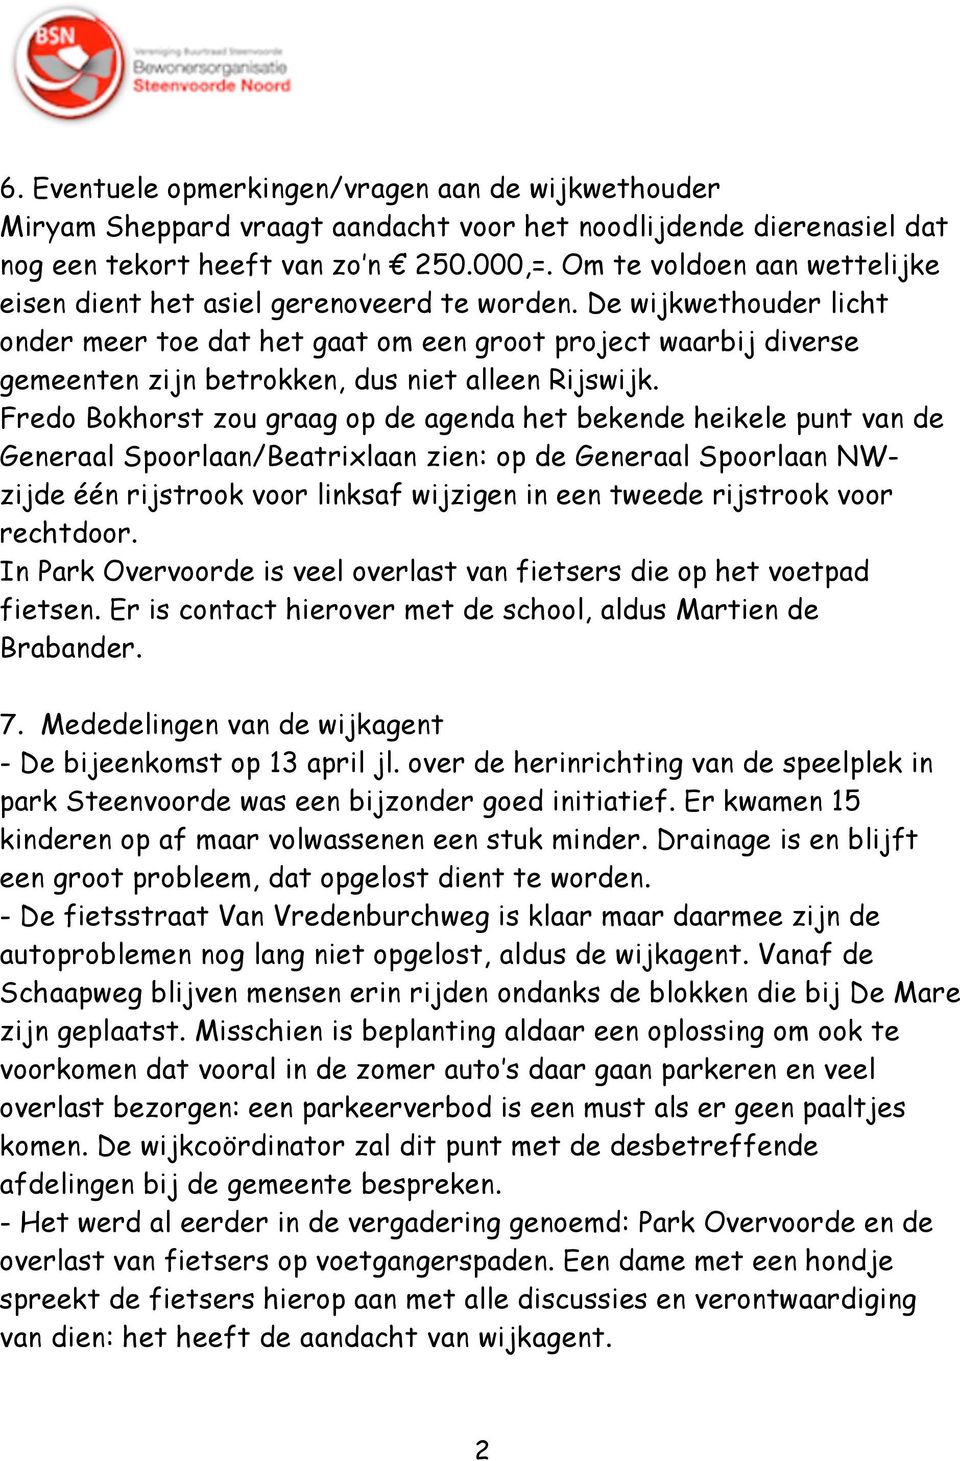 De wijkwethouder licht onder meer toe dat het gaat om een groot project waarbij diverse gemeenten zijn betrokken, dus niet alleen Rijswijk.